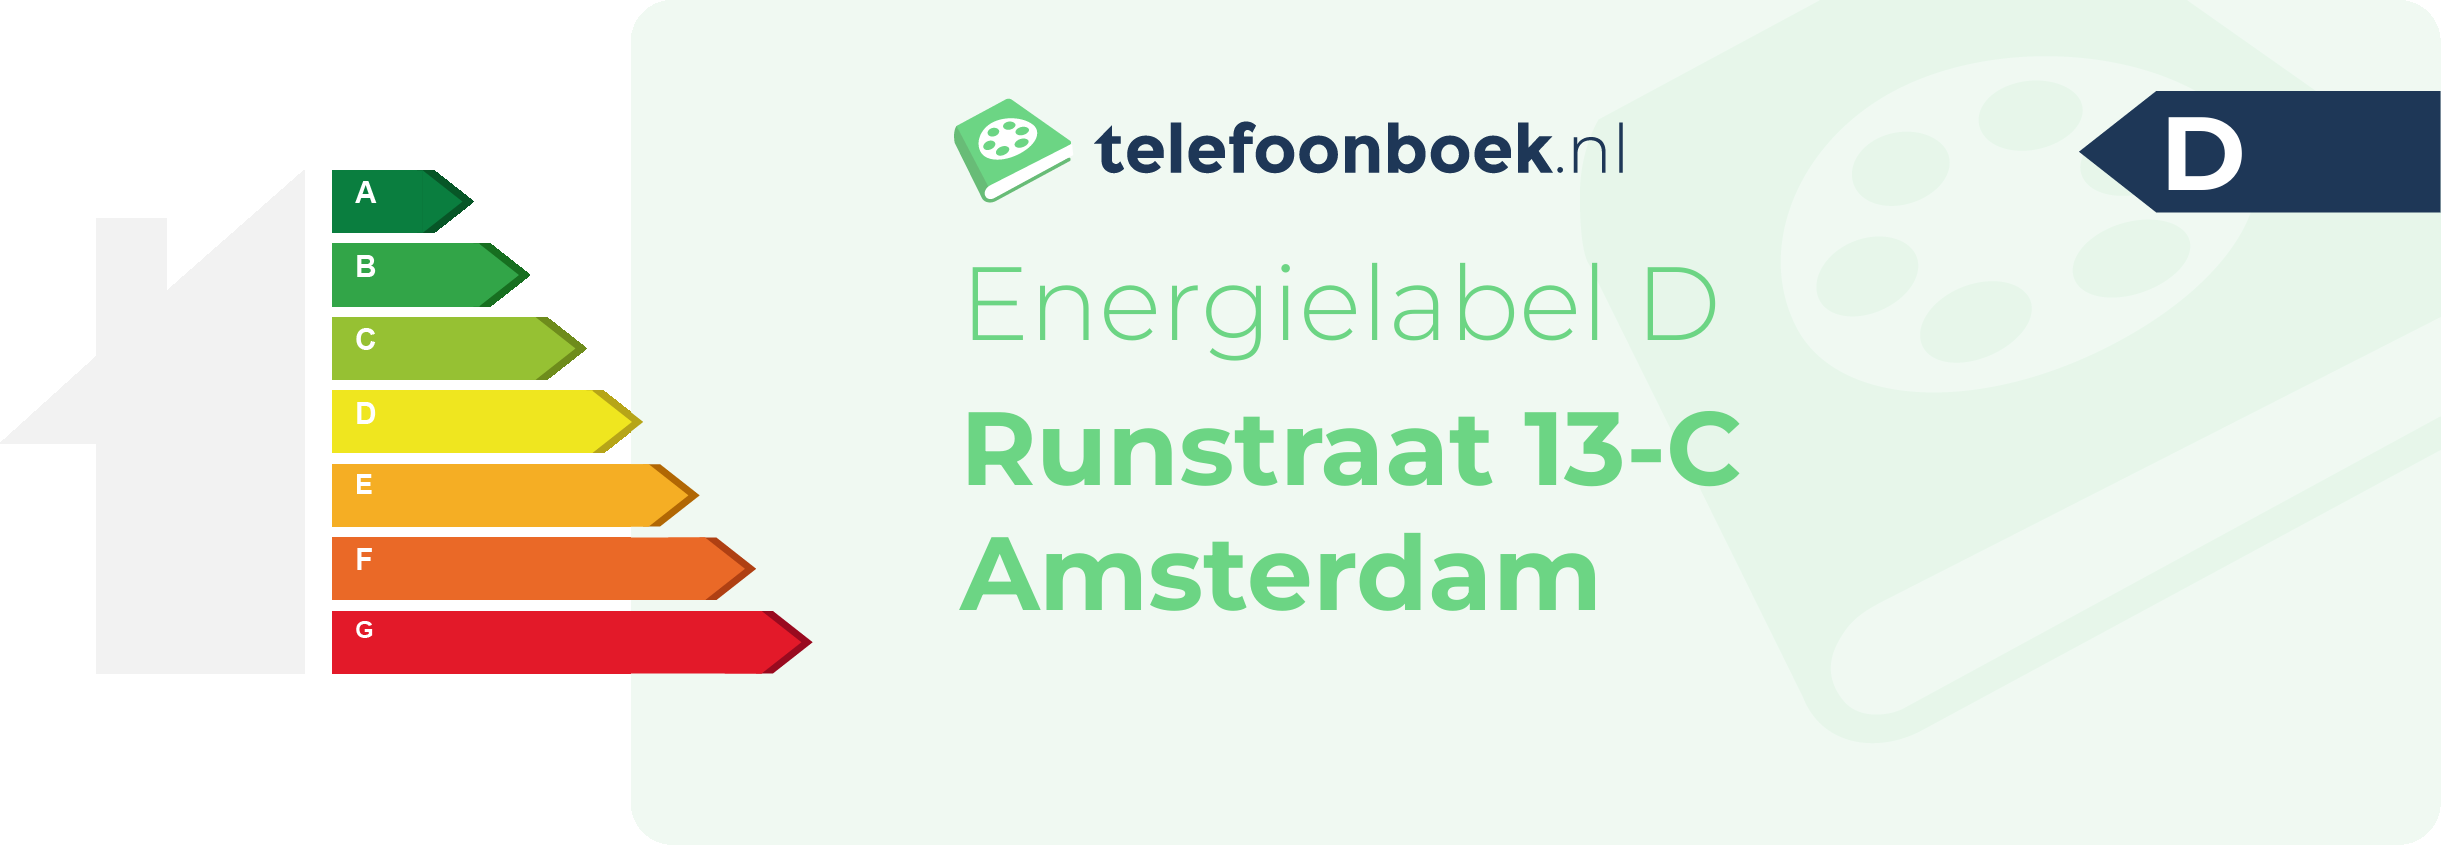 Energielabel Runstraat 13-C Amsterdam